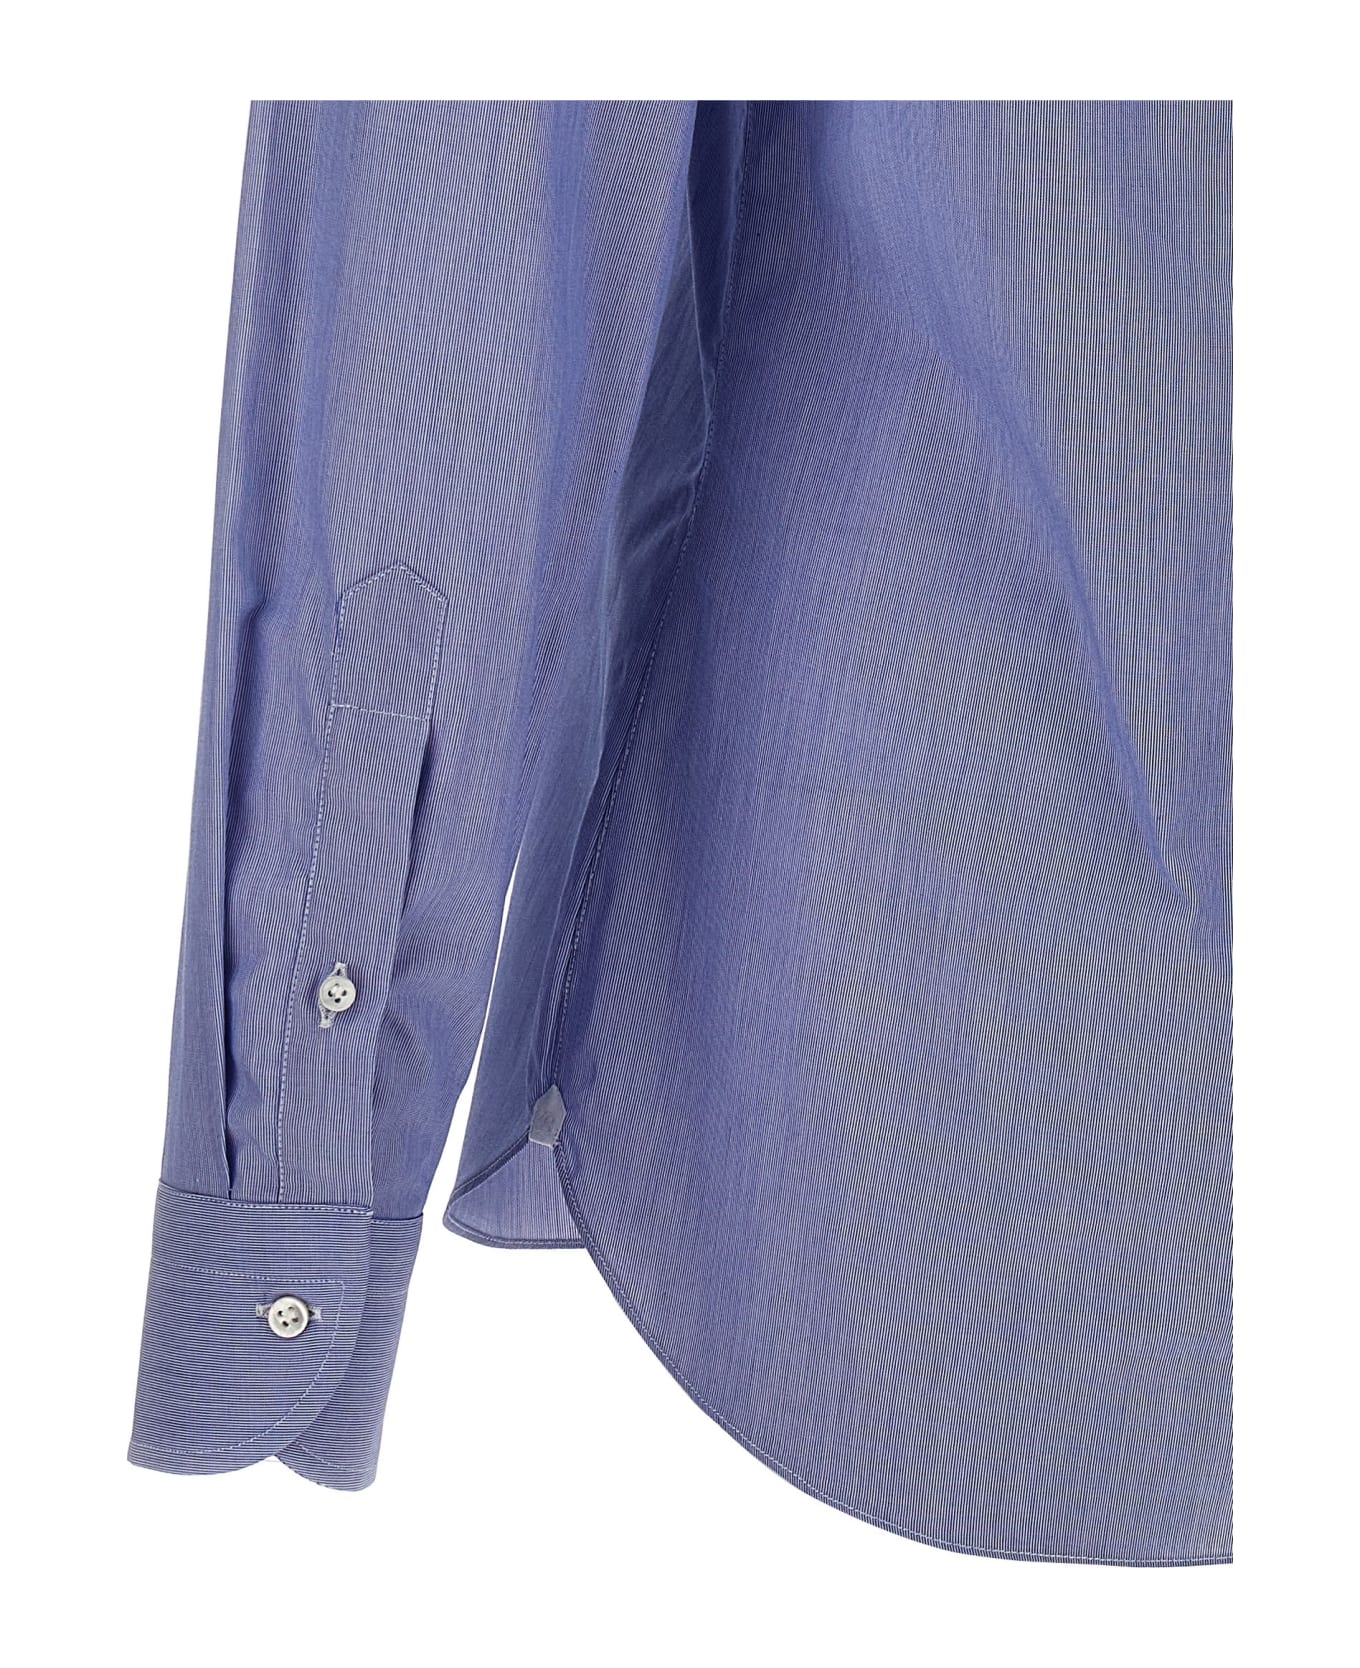 Borriello Napoli 'falso Unito' Cotton Shirt - Light Blue シャツ